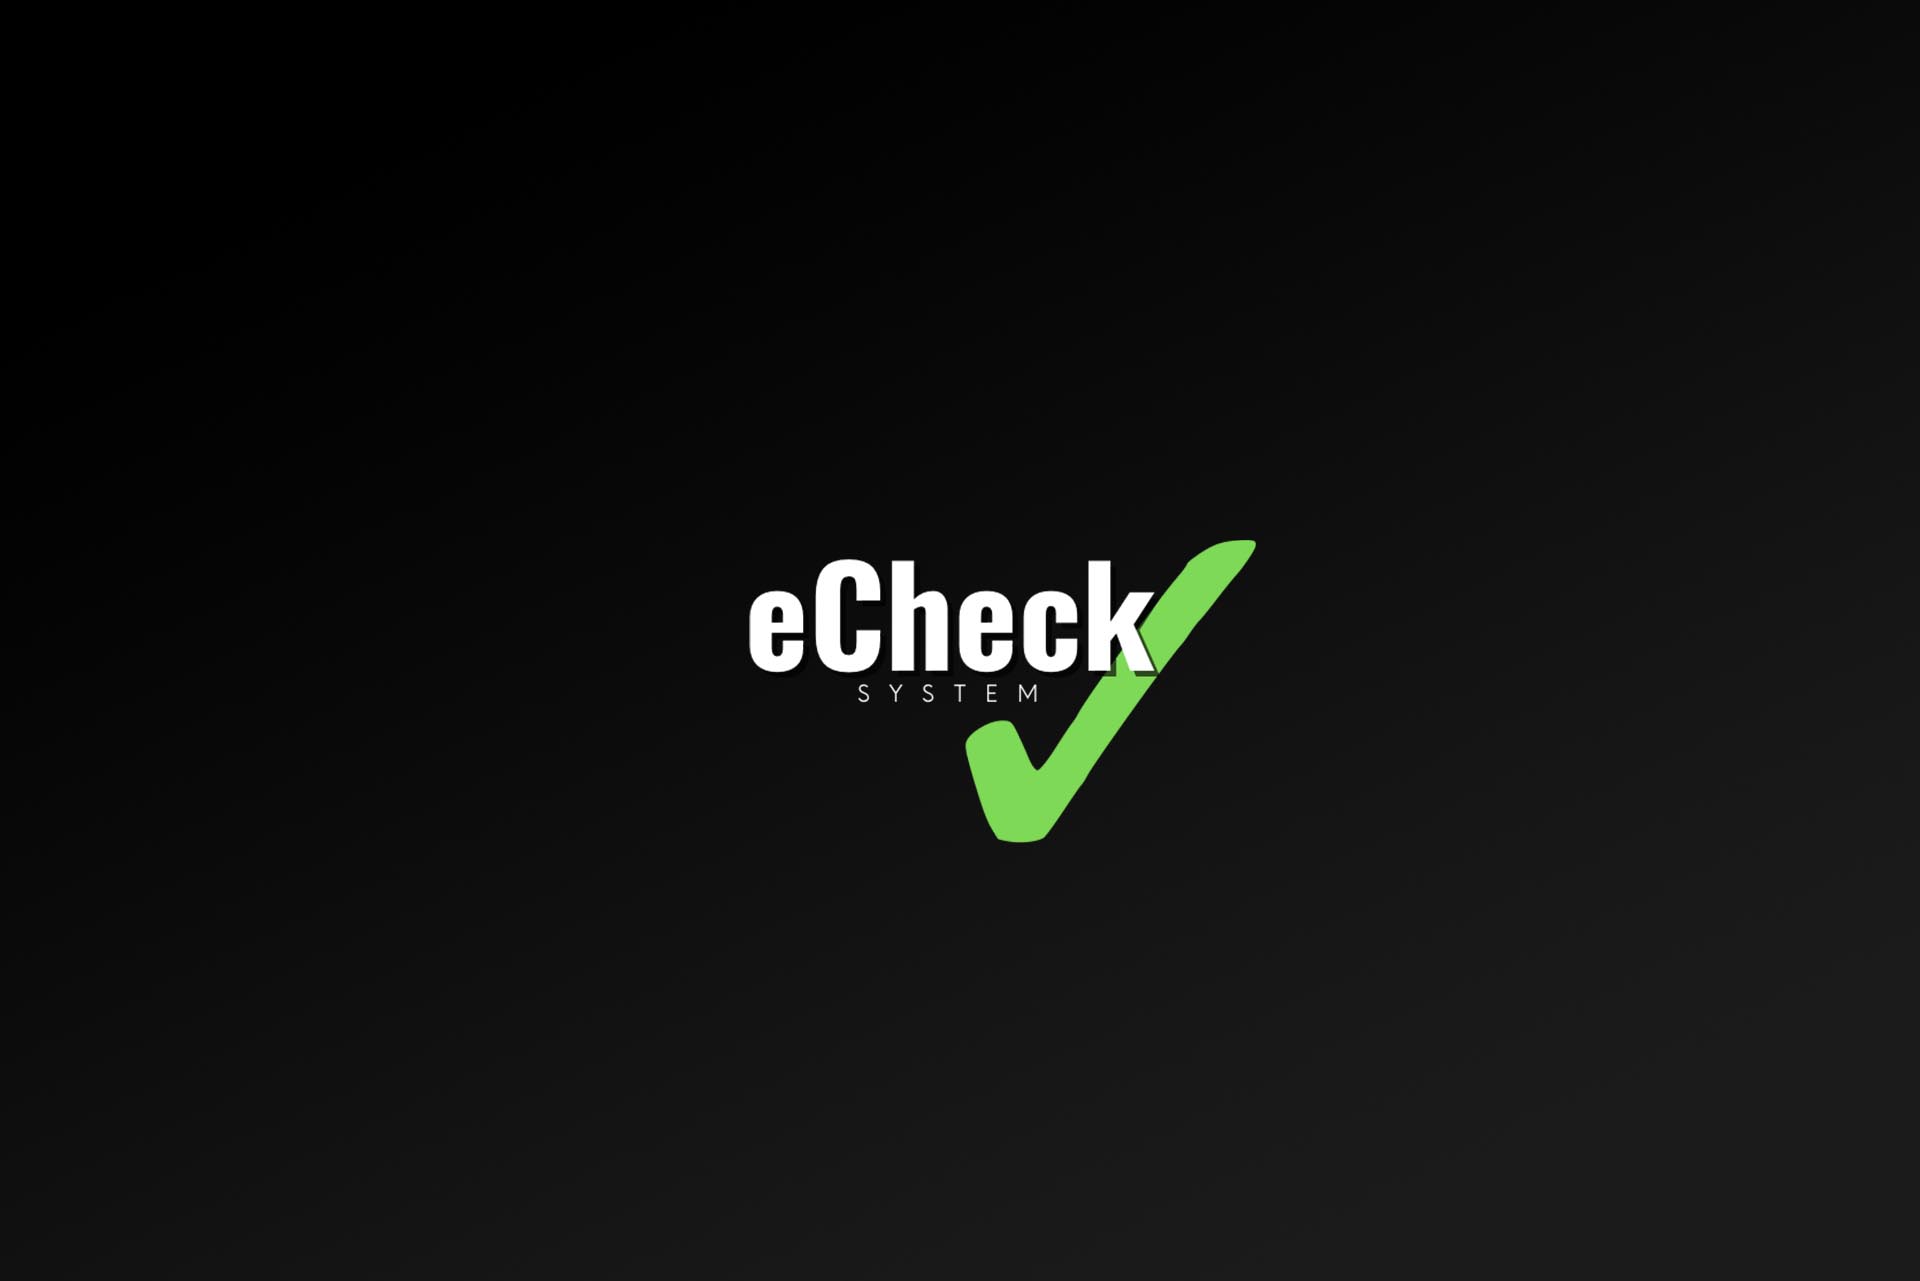 eCheck System